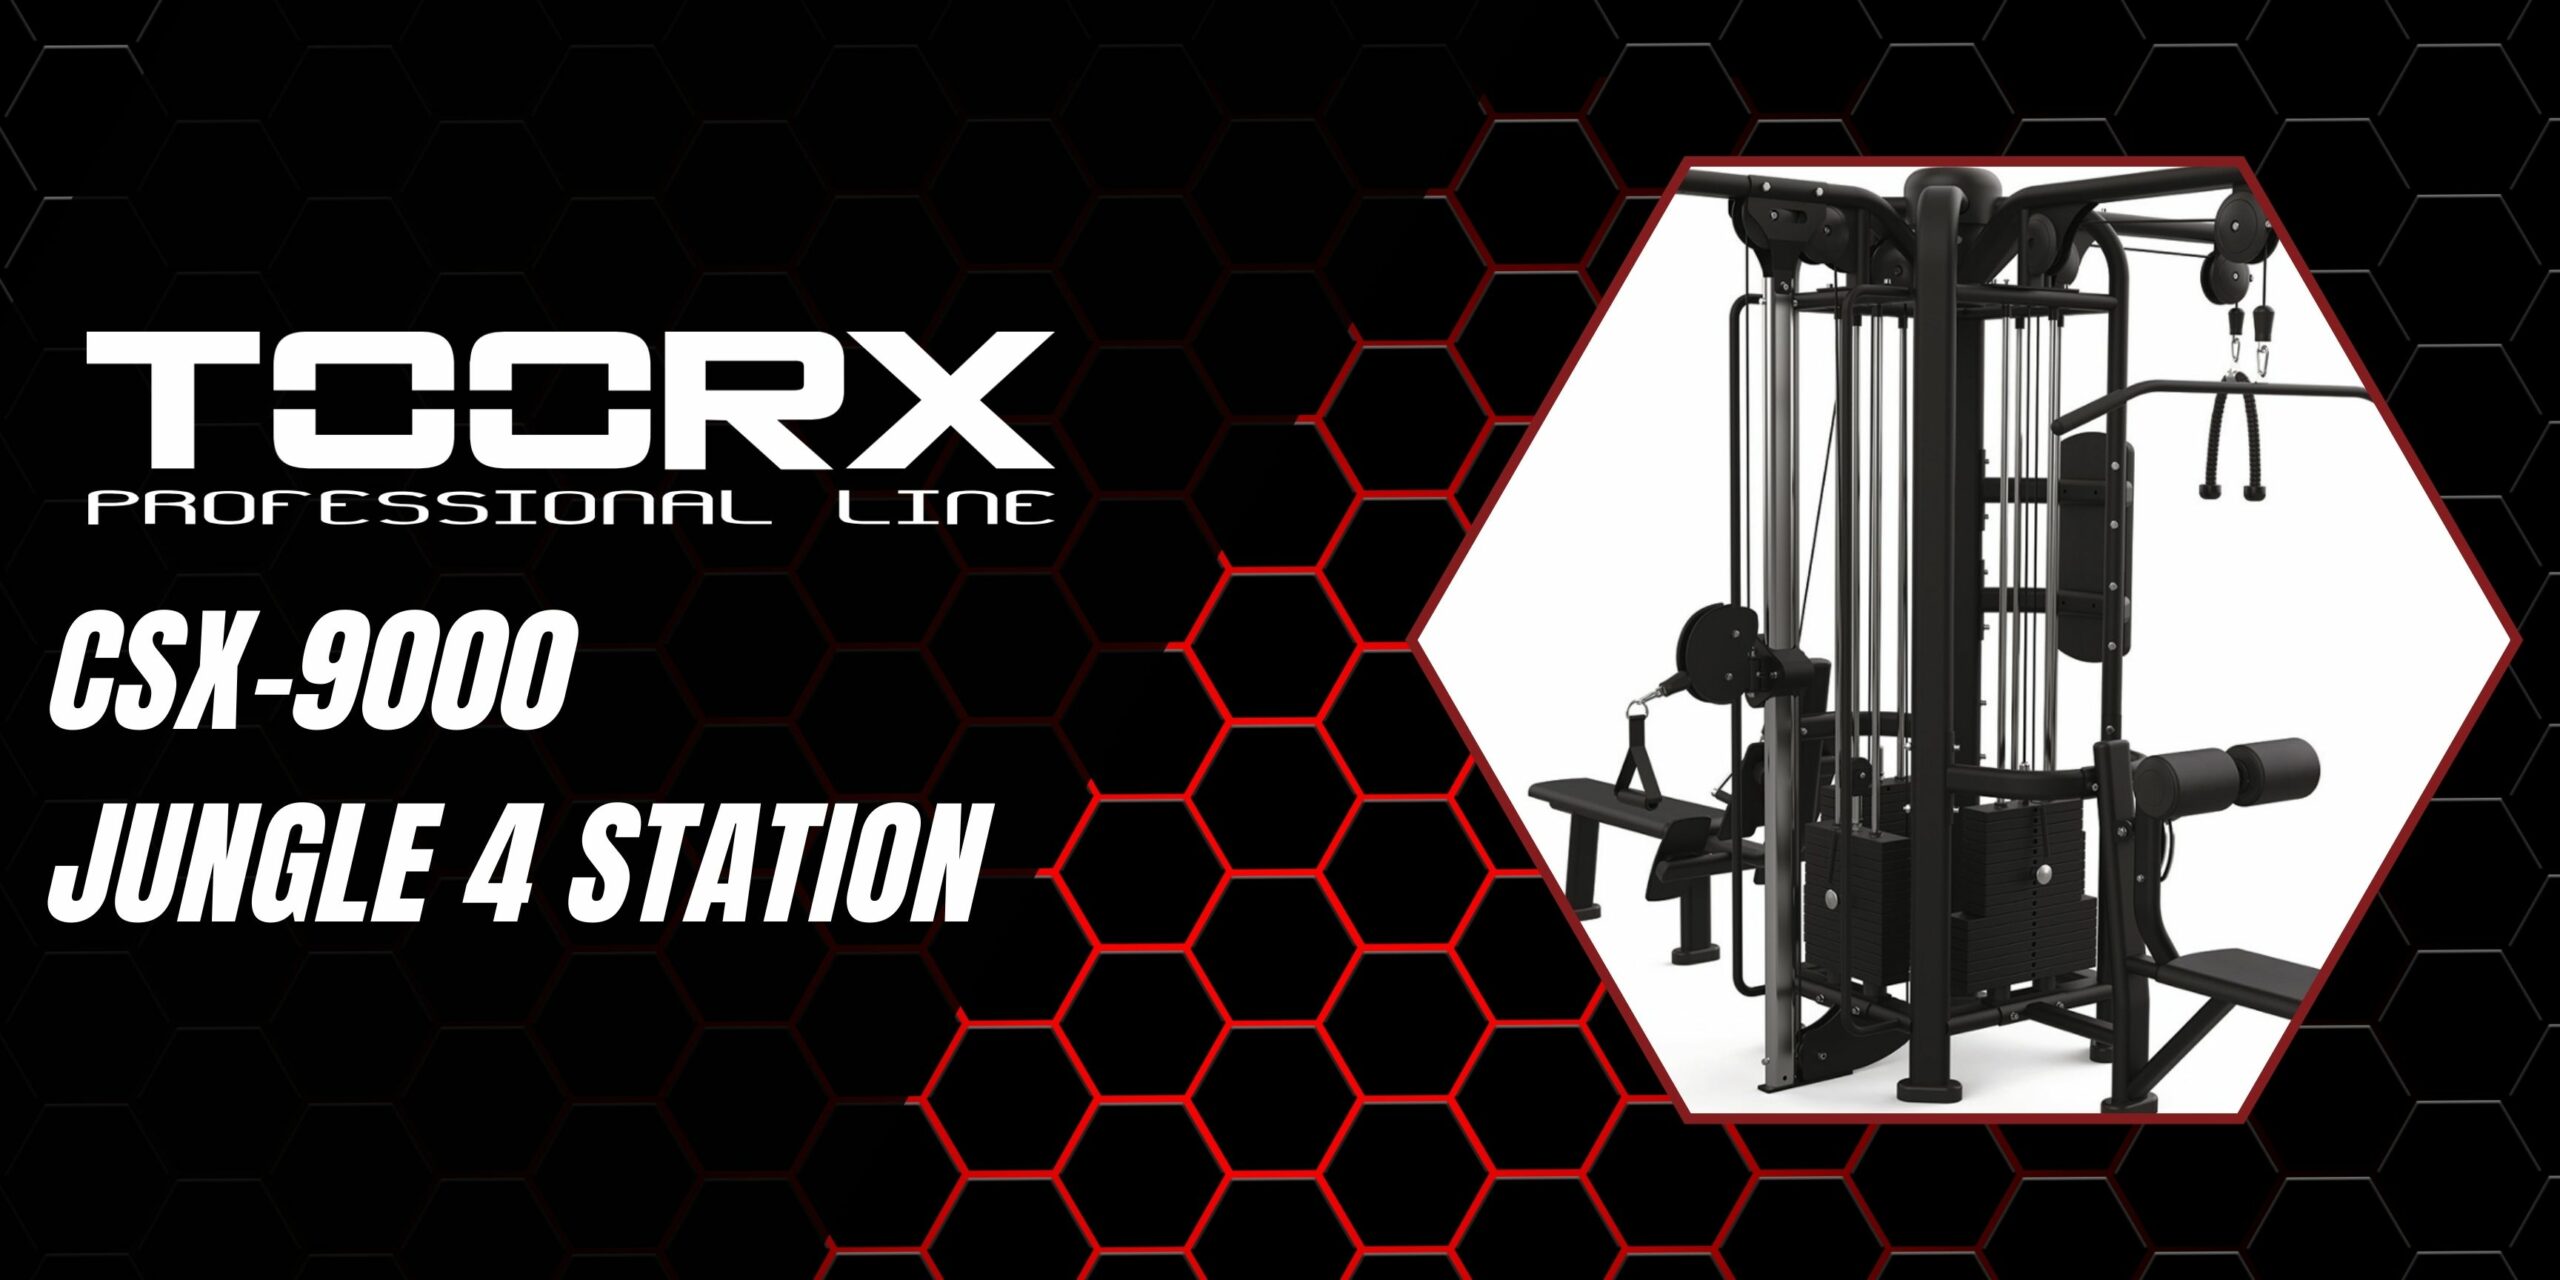 Toorx CSX-9000 Jungle 4 Station - multifunkcijska profesionalna naprava za več uporabnikov